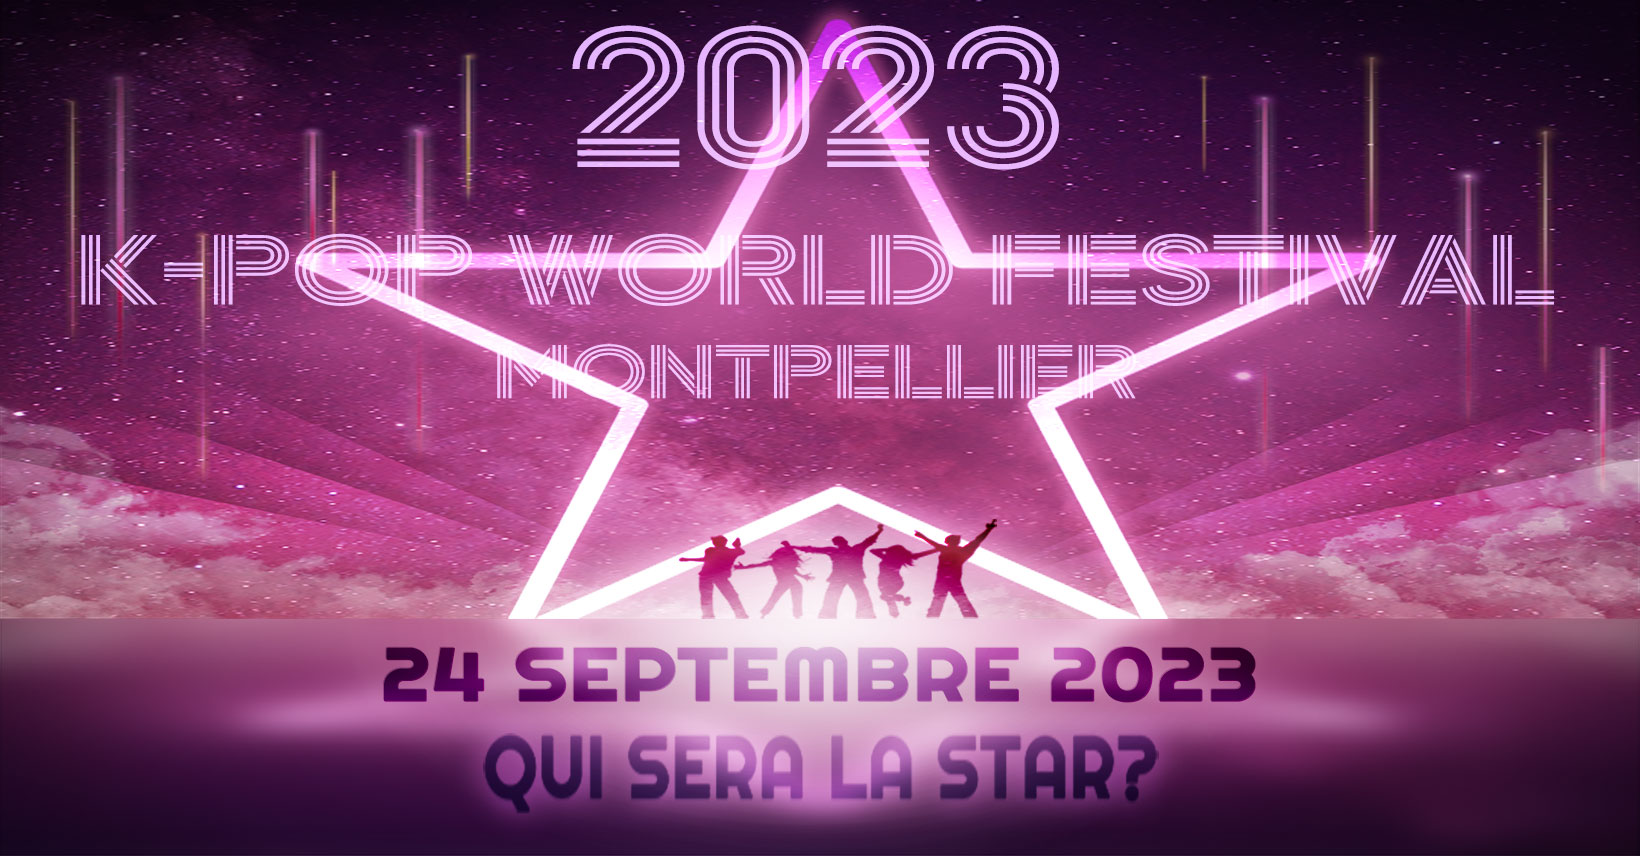 K-World Montpellier 2023